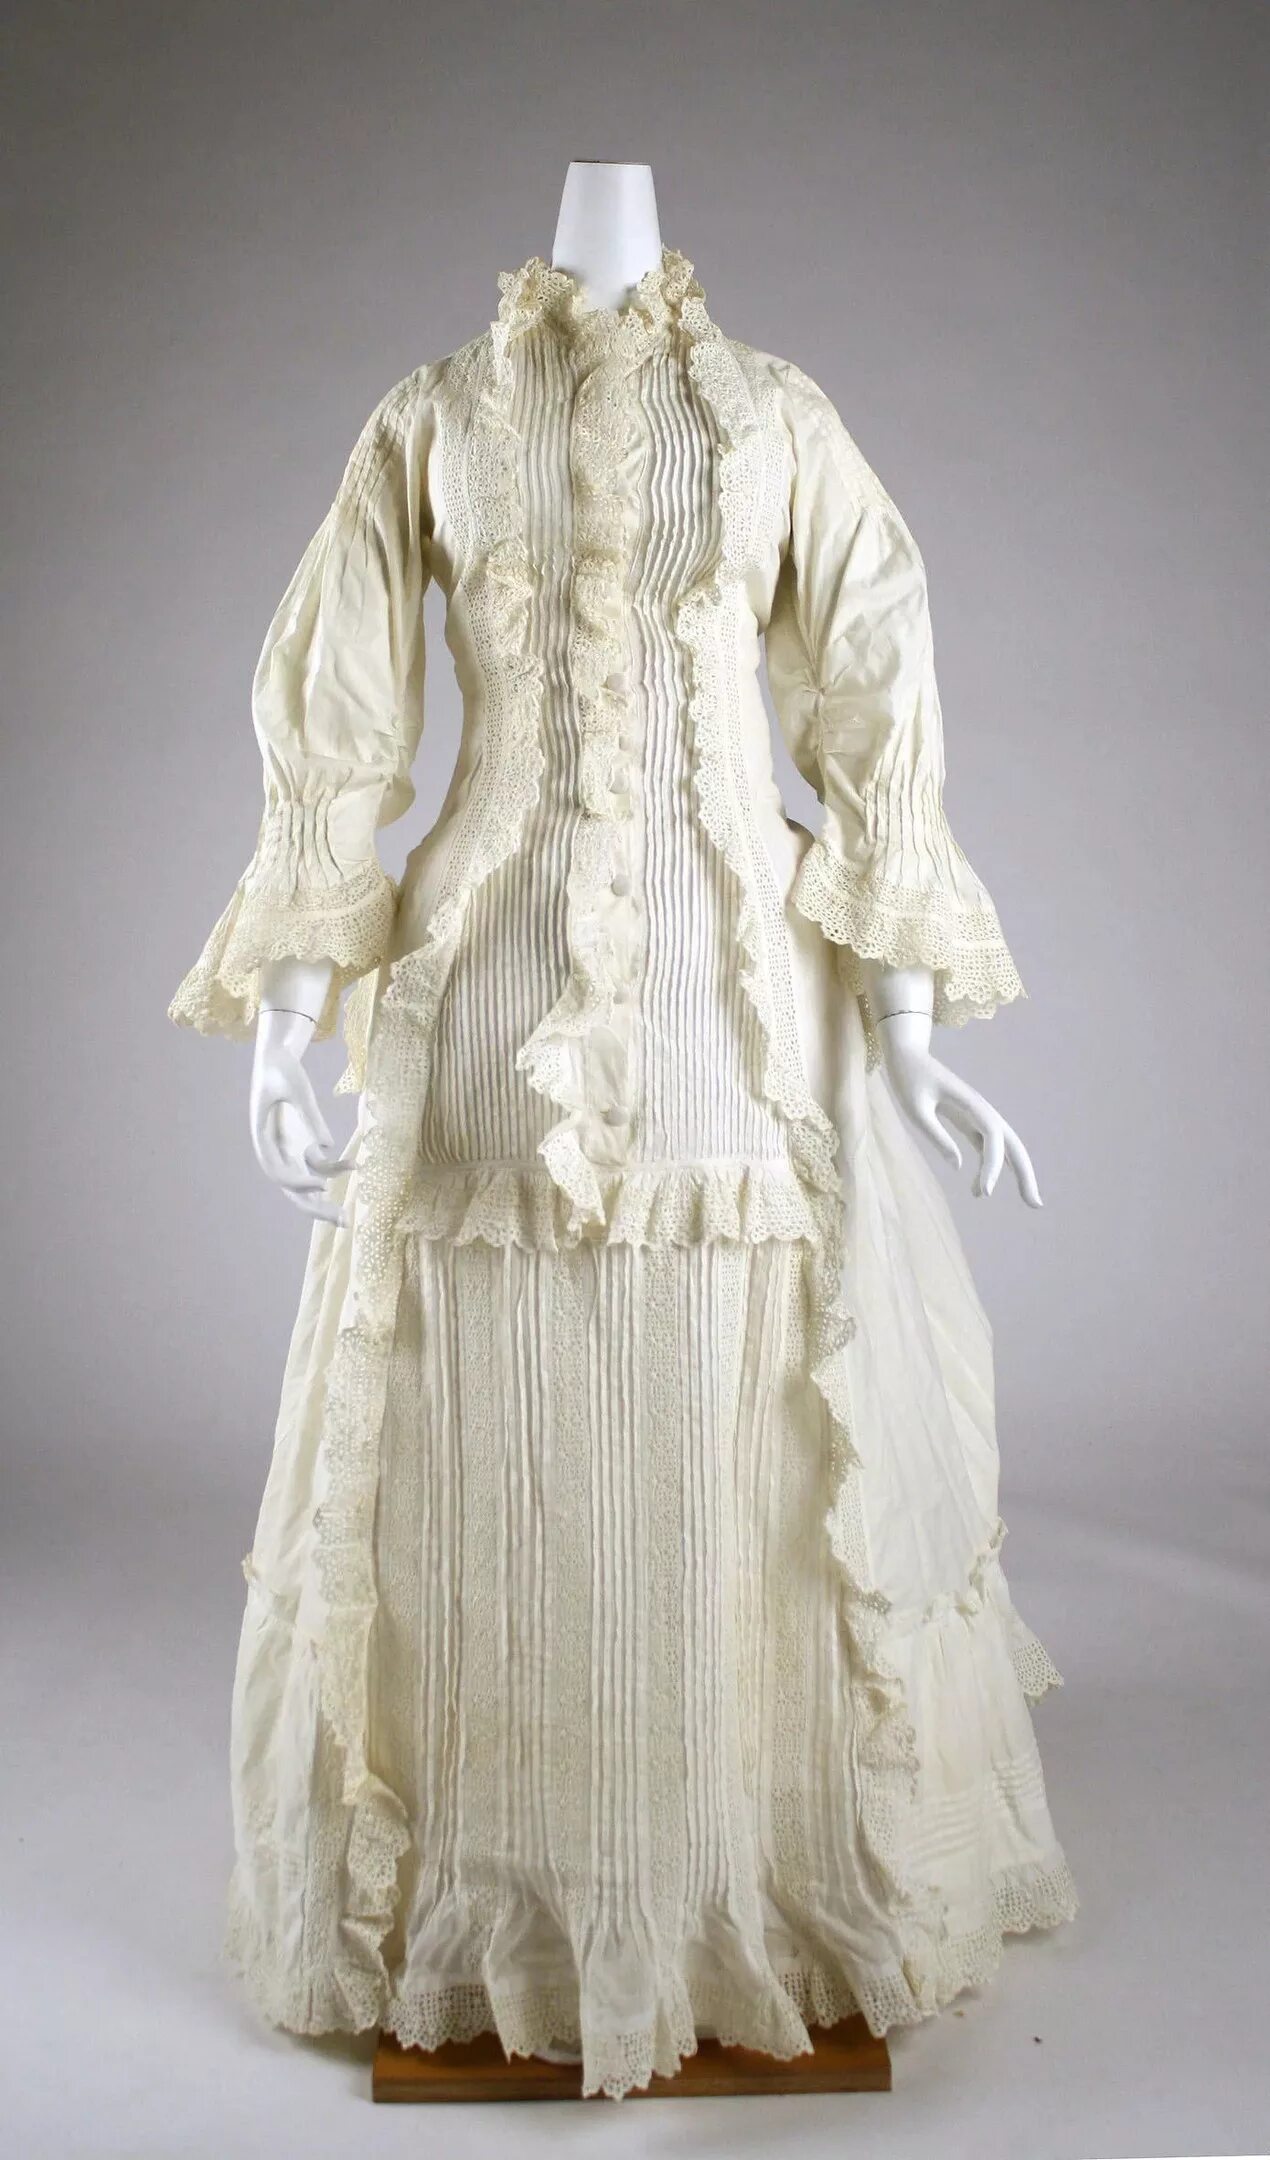 Капот женская одежда. Викторианская эпоха одежда 19 века. Викторианская одежда женская 19 век. Викторианская эпоха 19 век одежда. Мода викторианской эпохи 19 век.